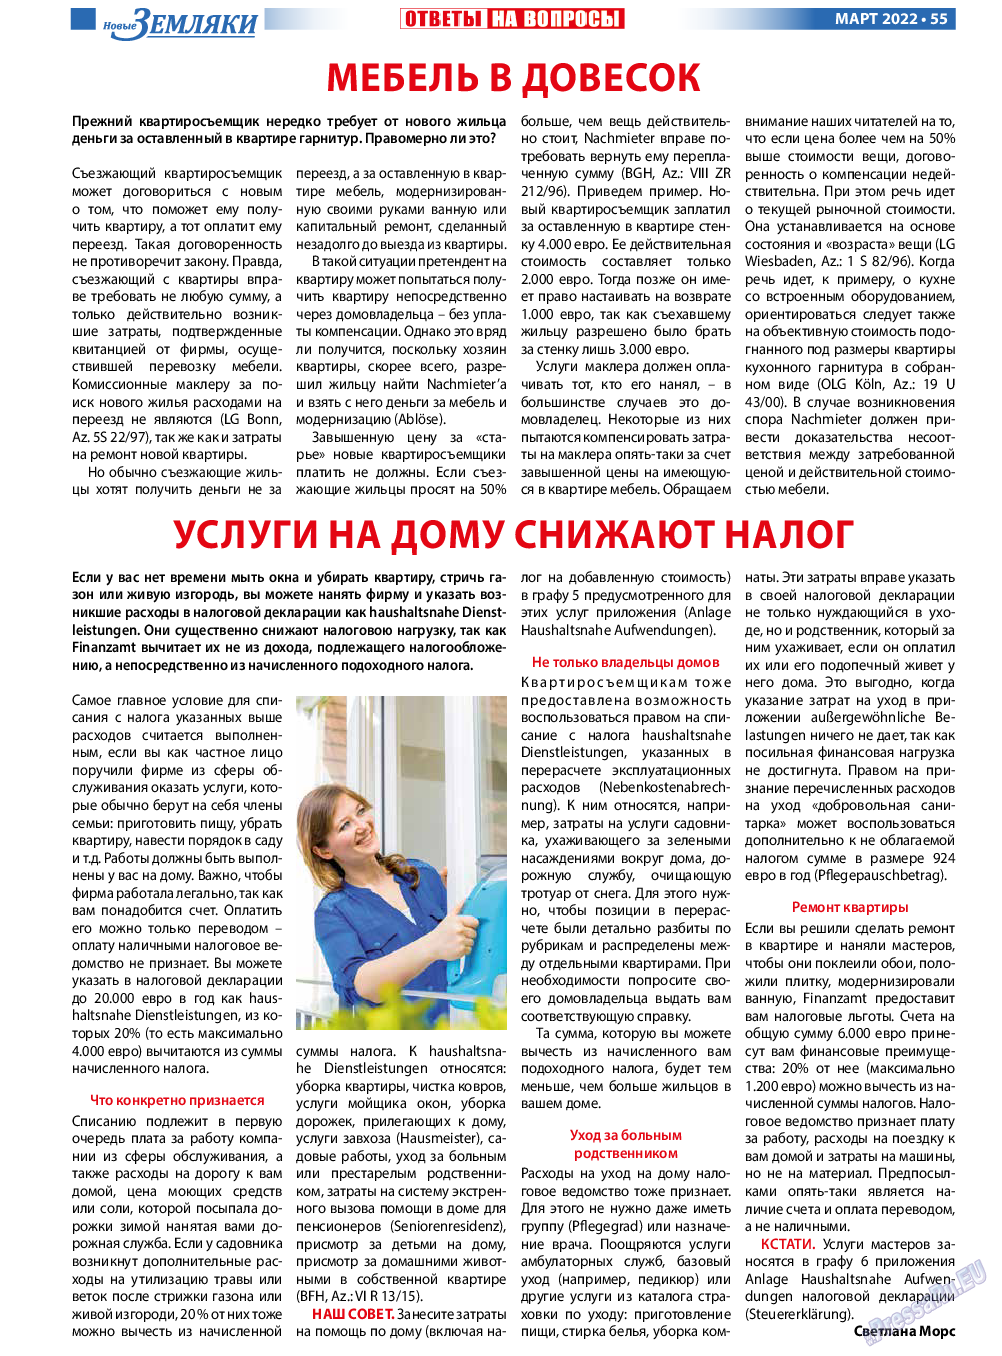 Новые Земляки, газета. 2022 №3 стр.55